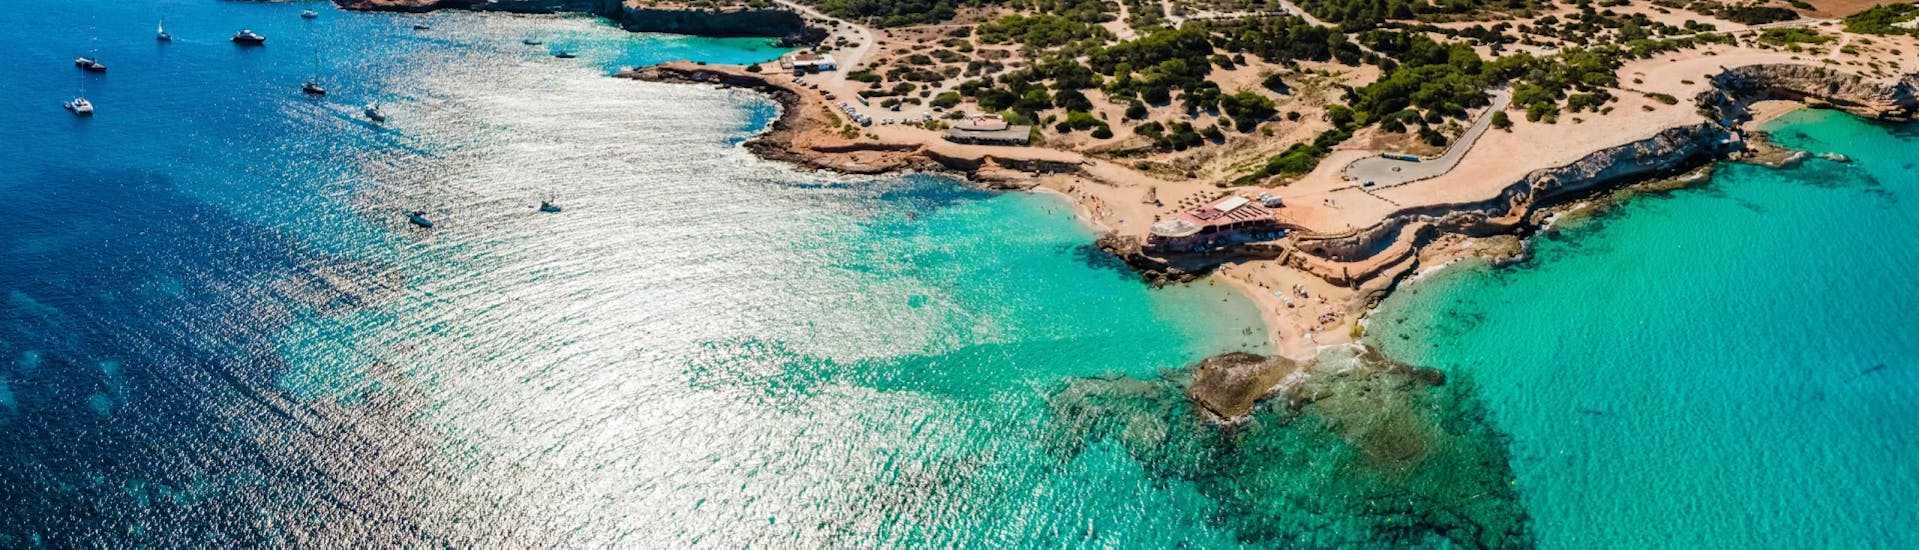 Paisaje de la costa de Ibiza durante Excursión Privada en Barco en ibiza con Snorkeling y Barra Libre por Arenal diving.